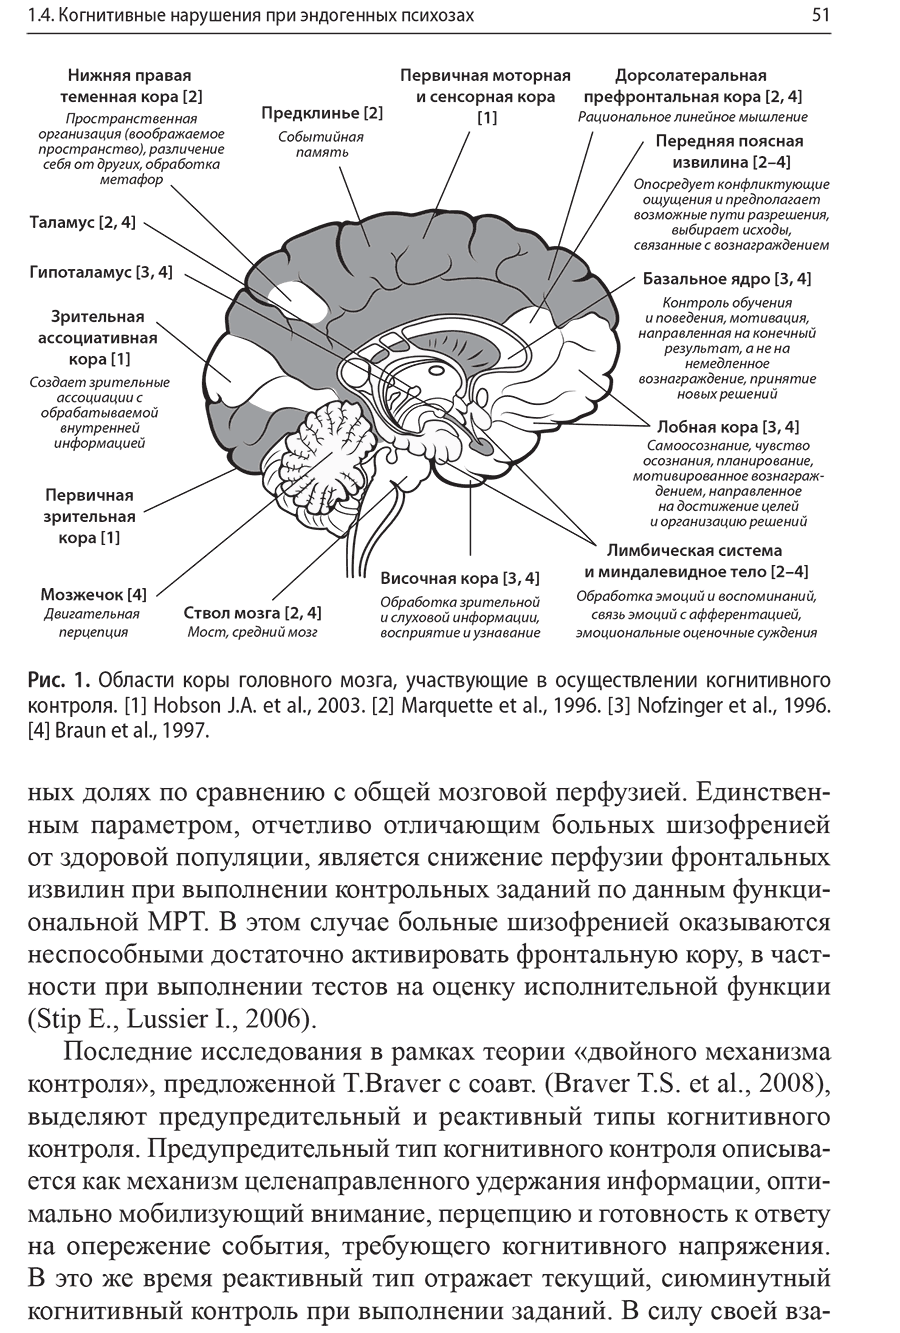 Рис. 1. Области коры головного мозга, участвующие в осуществлении когнитивного контроля